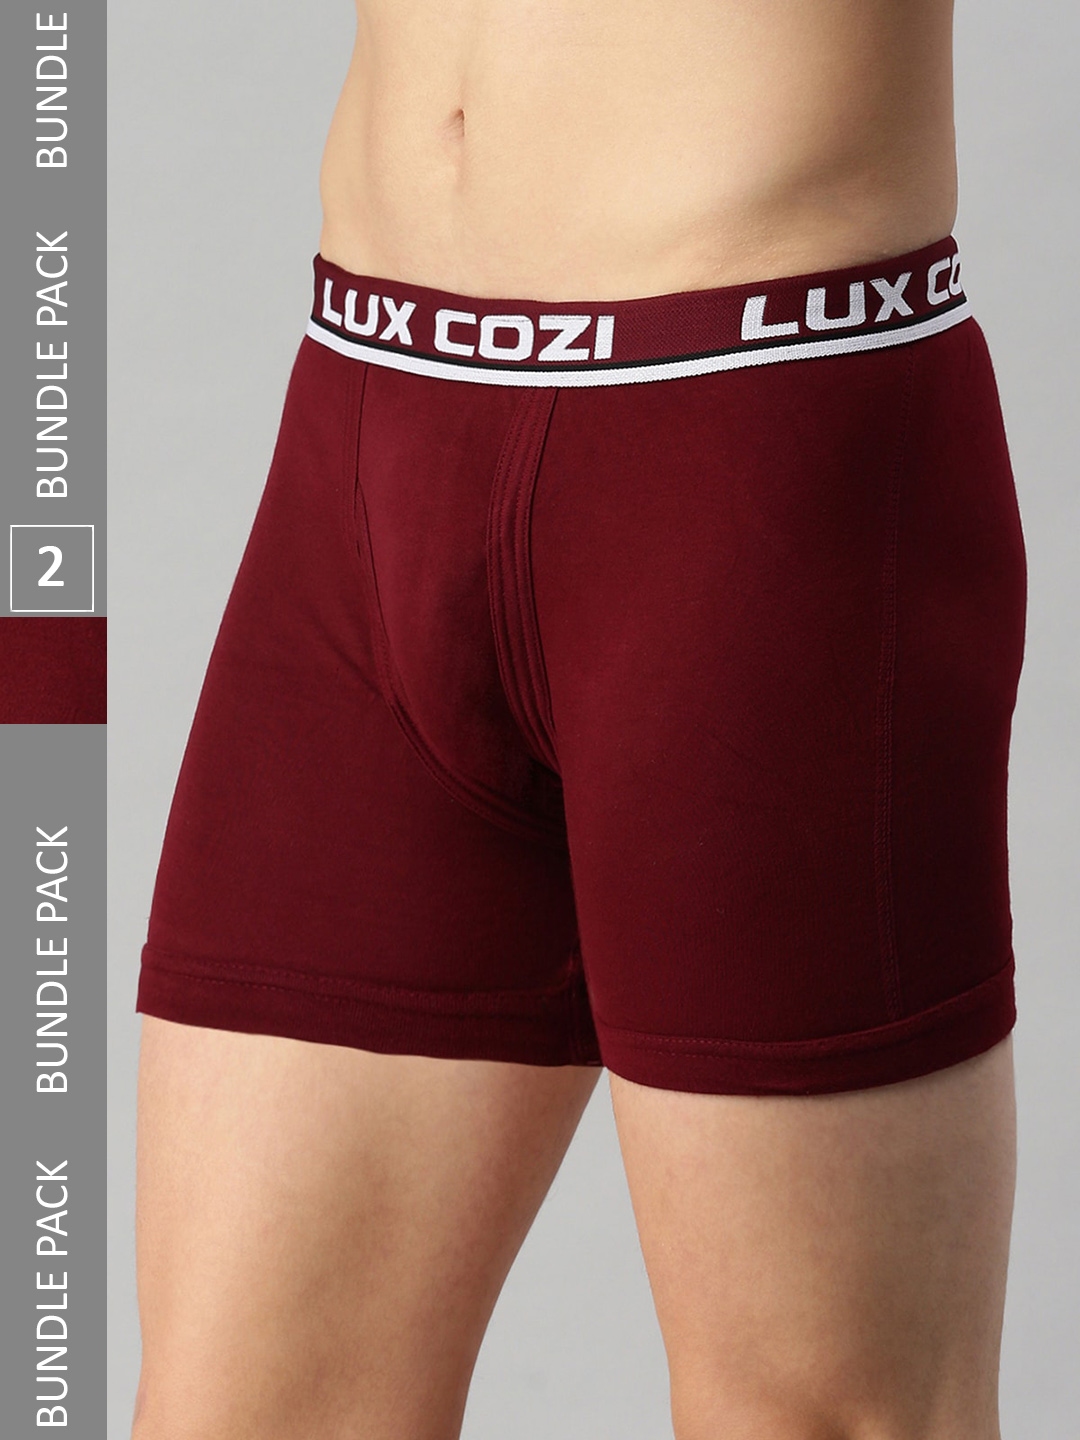 Buy Lux Cozi Men Pack Of 2 Logo Printed Detail Trunks - Trunk for